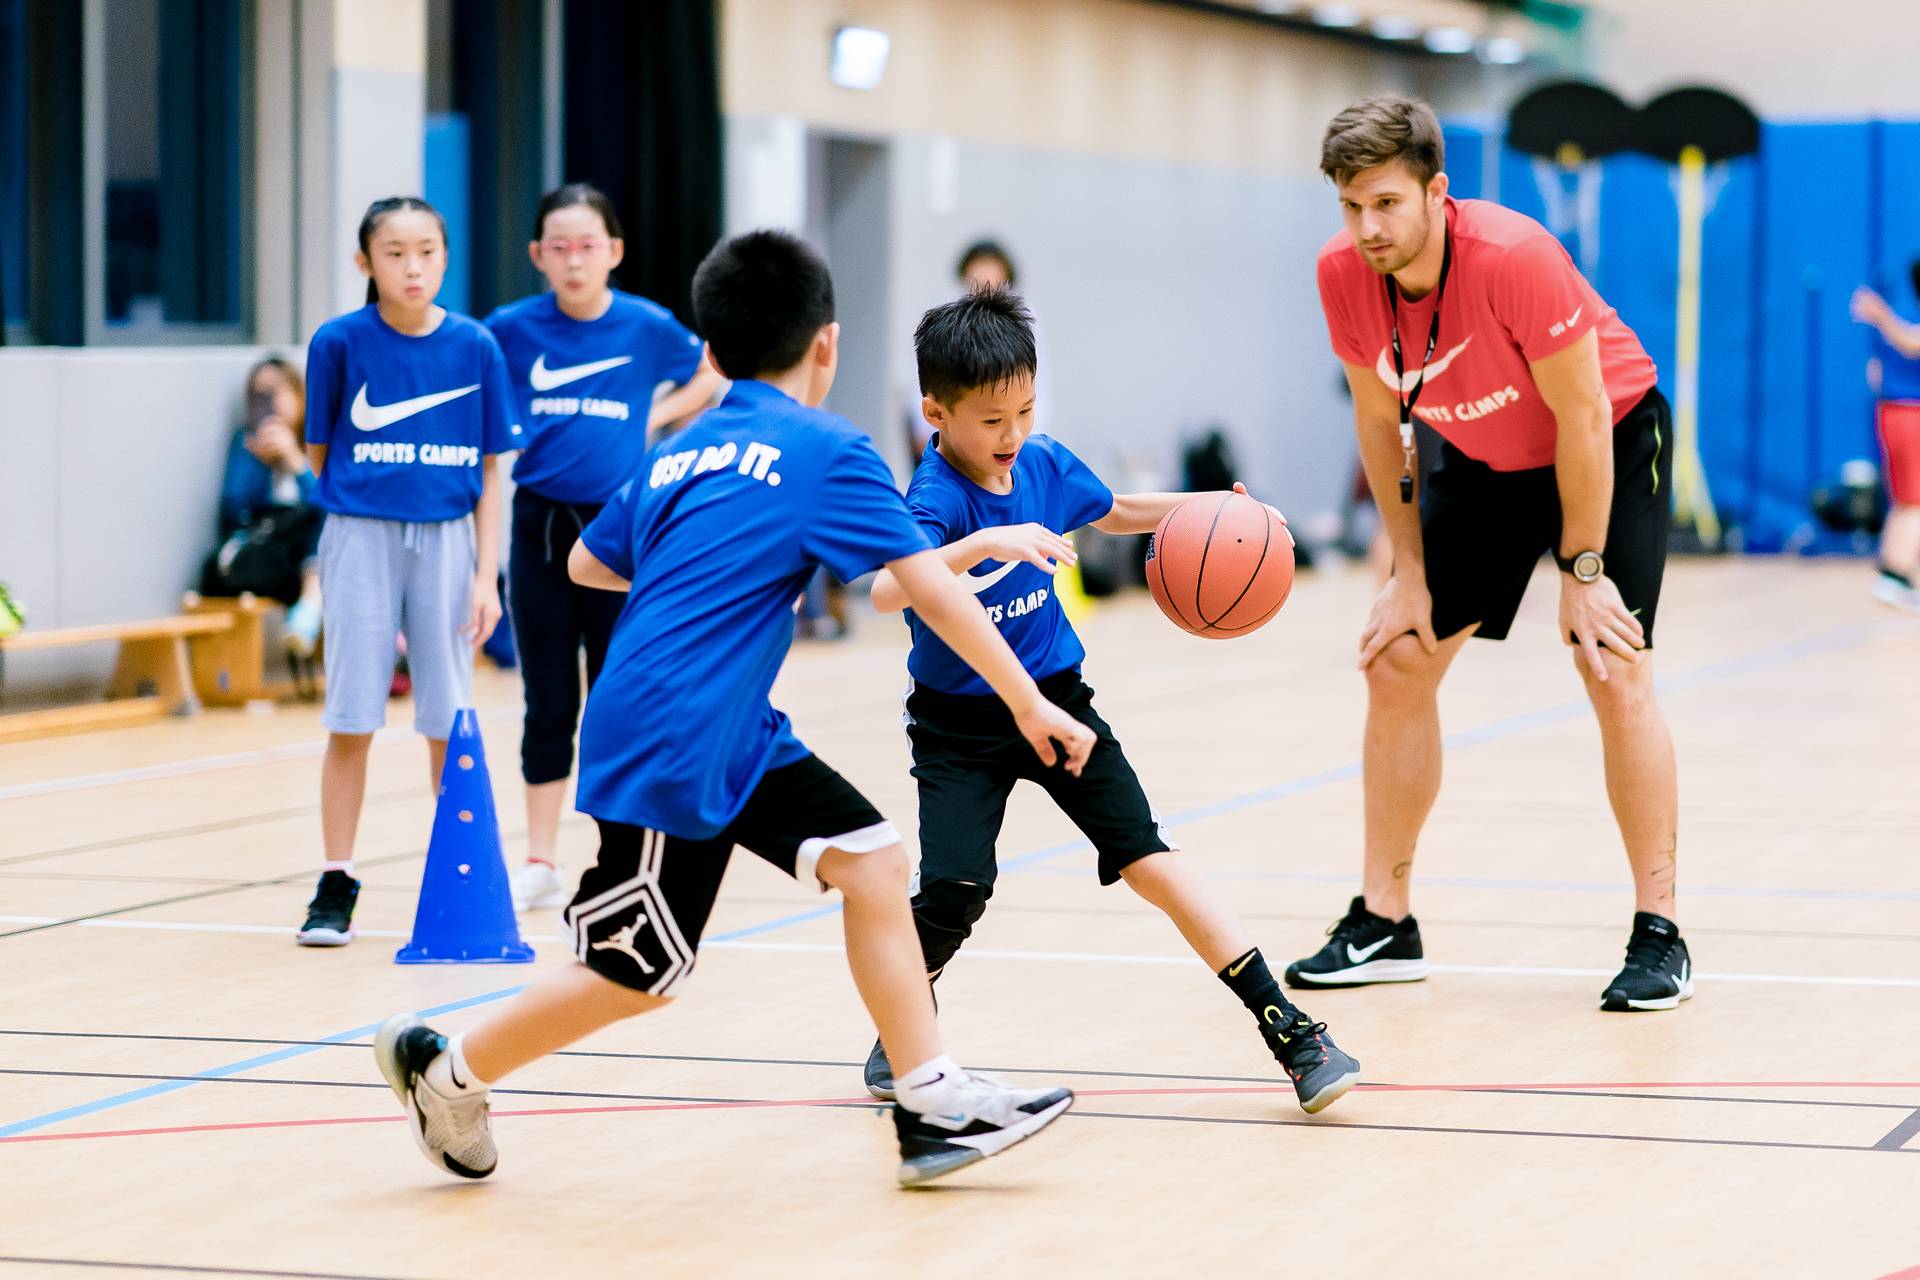 Nike Basketball IQ Camp NIKE 籃球領袖營 (5 - 7歲 及 8 - 15歲) (灣仔)